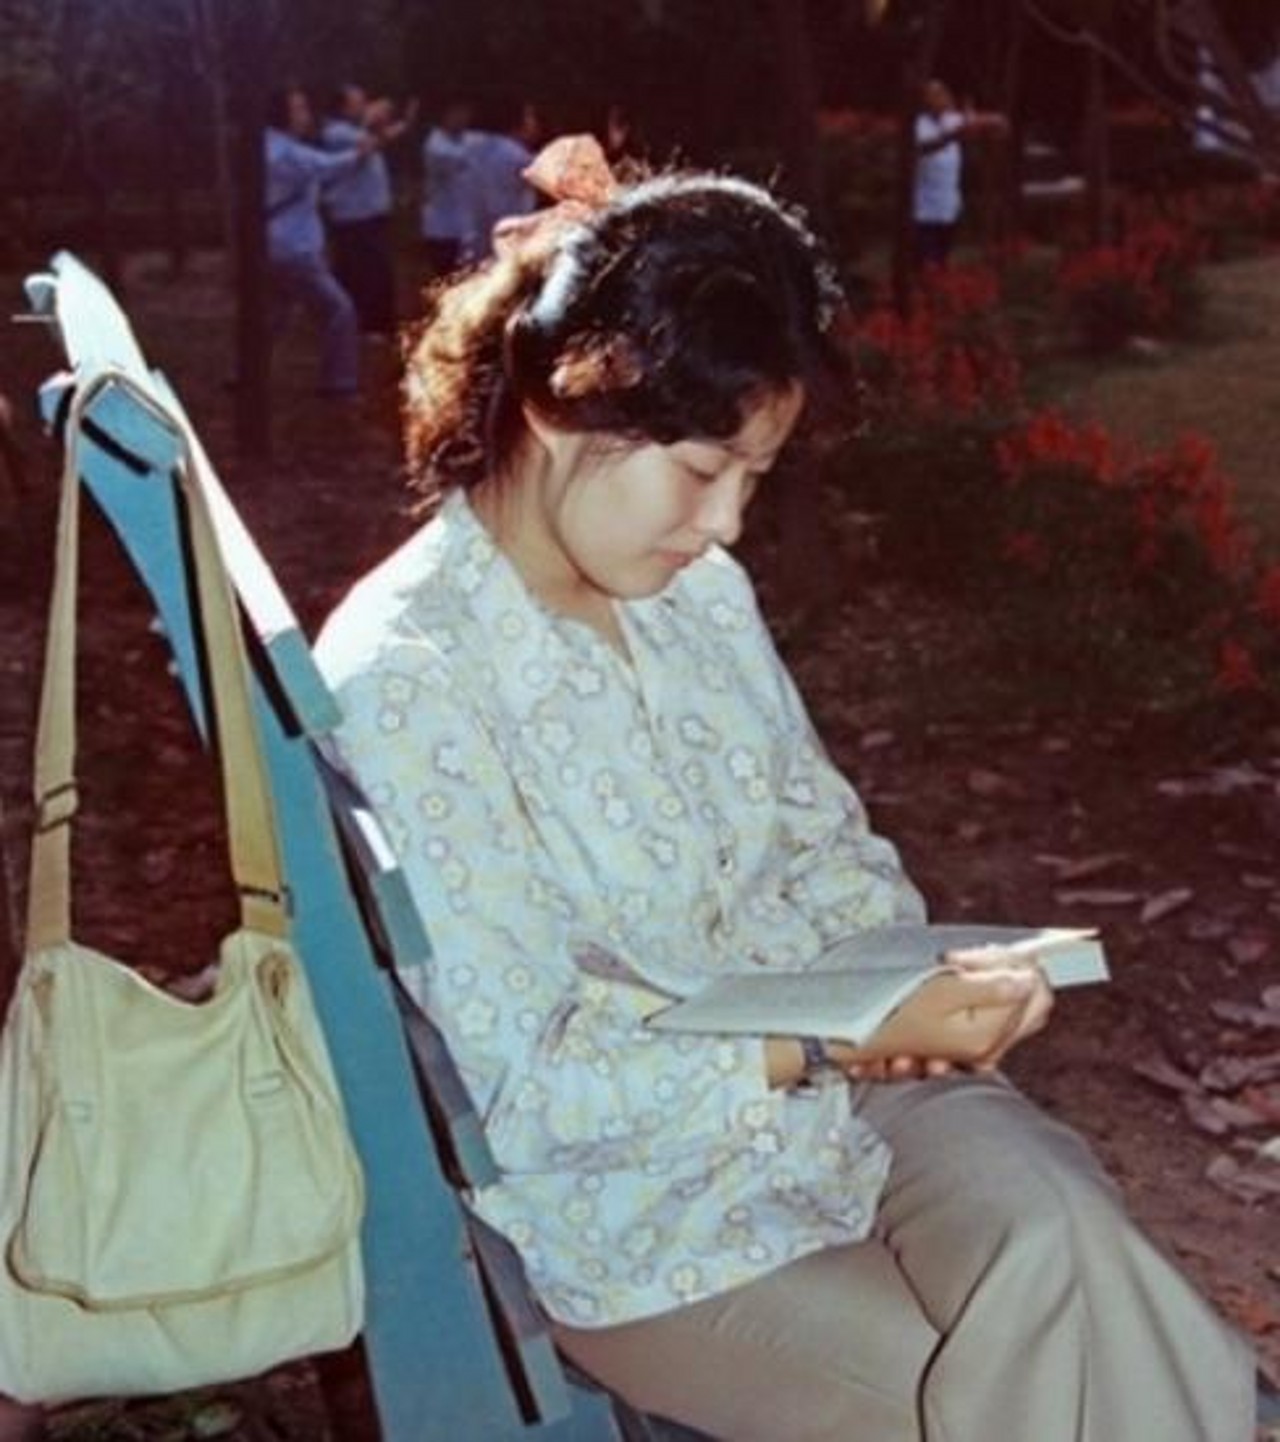 八十年代穿裙子的彩照图片